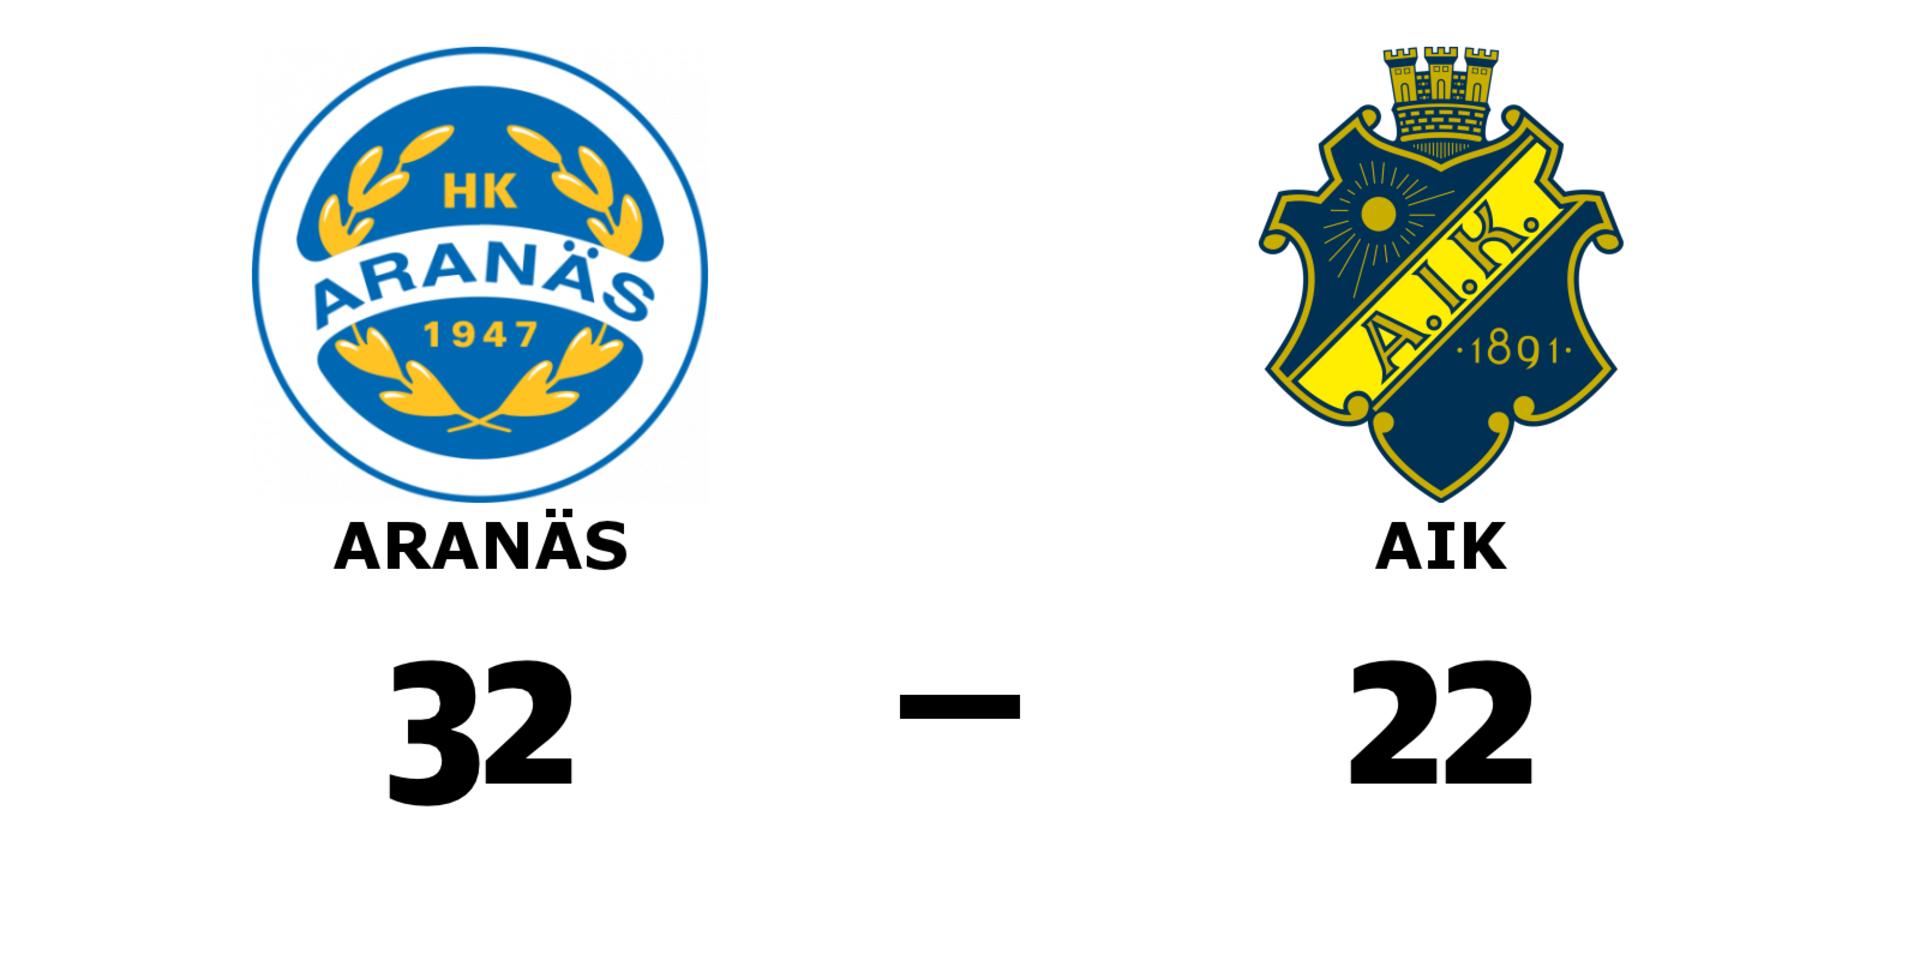 HK Aranäs dam vann mot AIK handboll